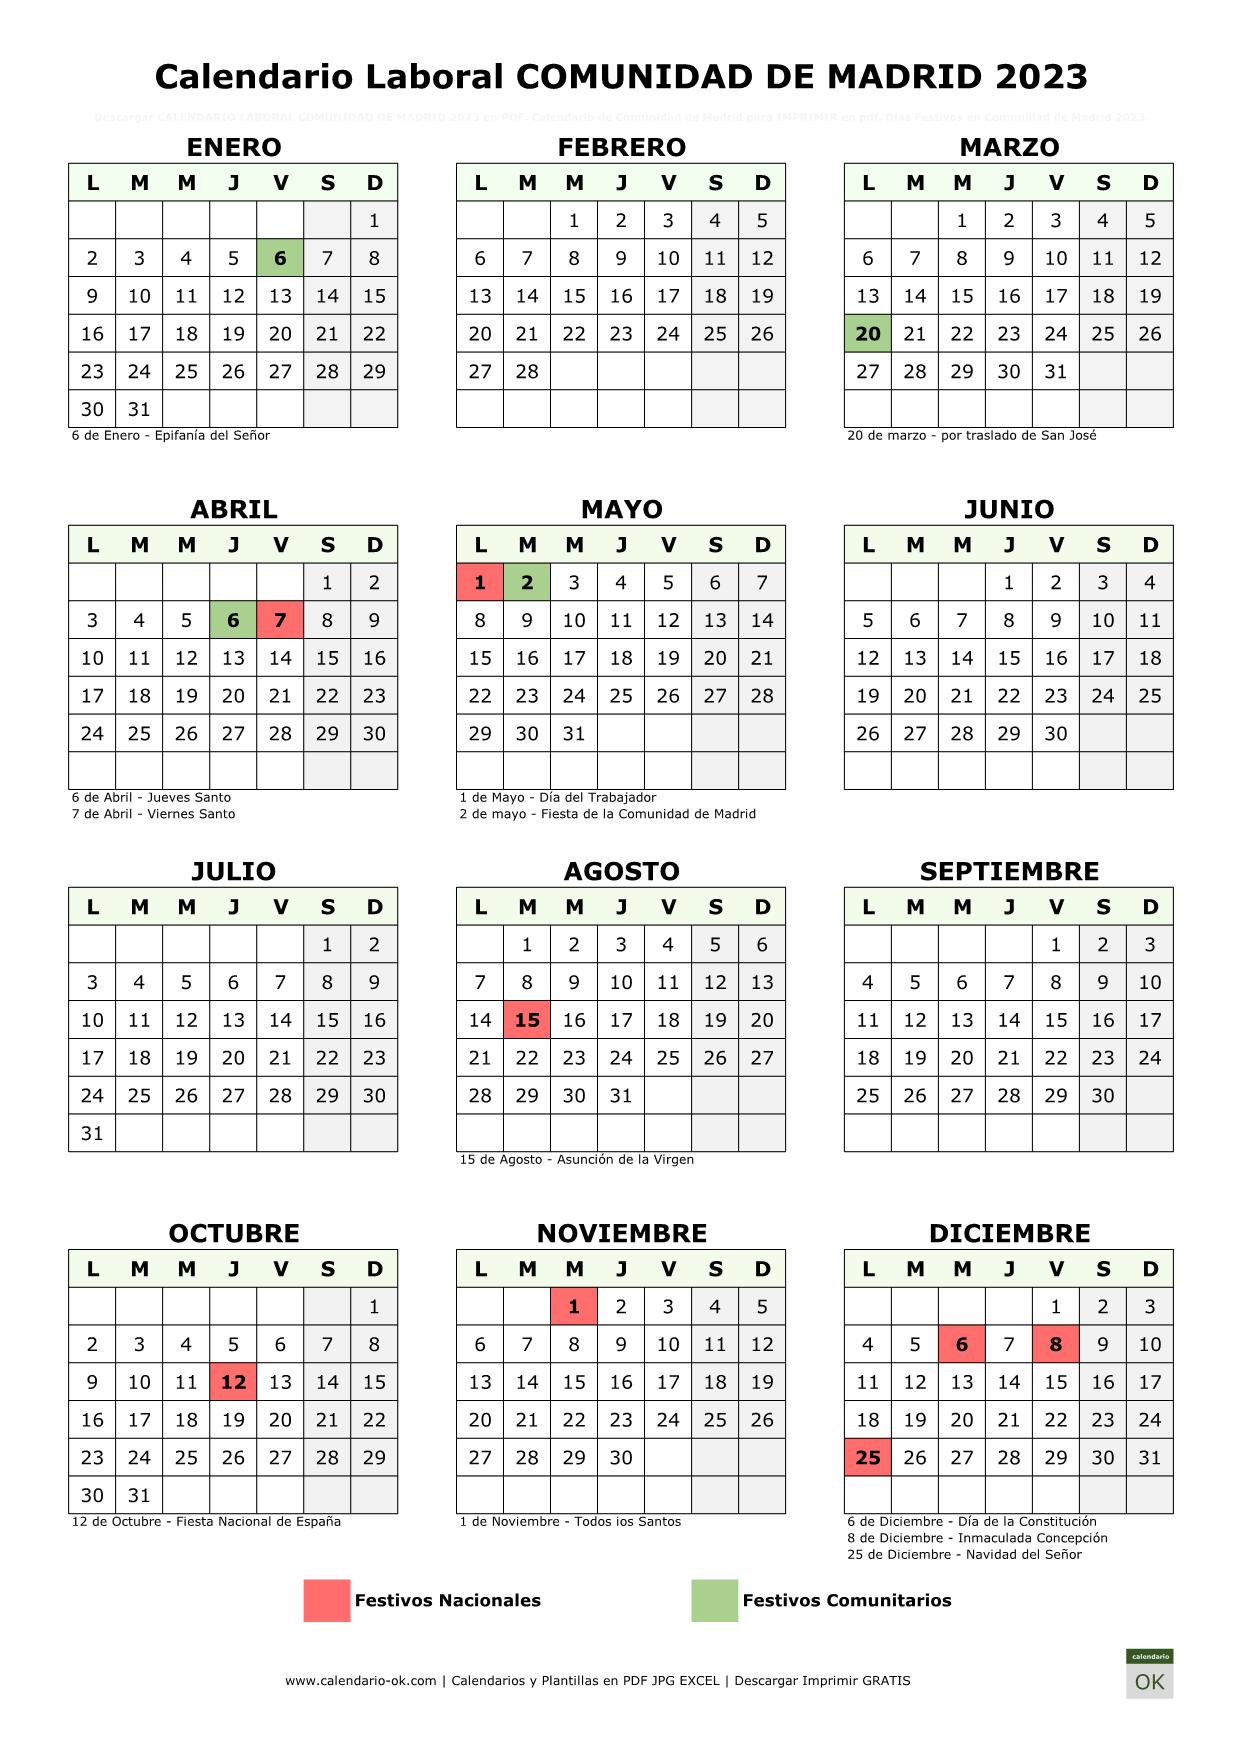 Festivo Mayo Madrid 2023 Calendario Laboral COMUNIDAD DE MADRID 2023 | PDF | JPG